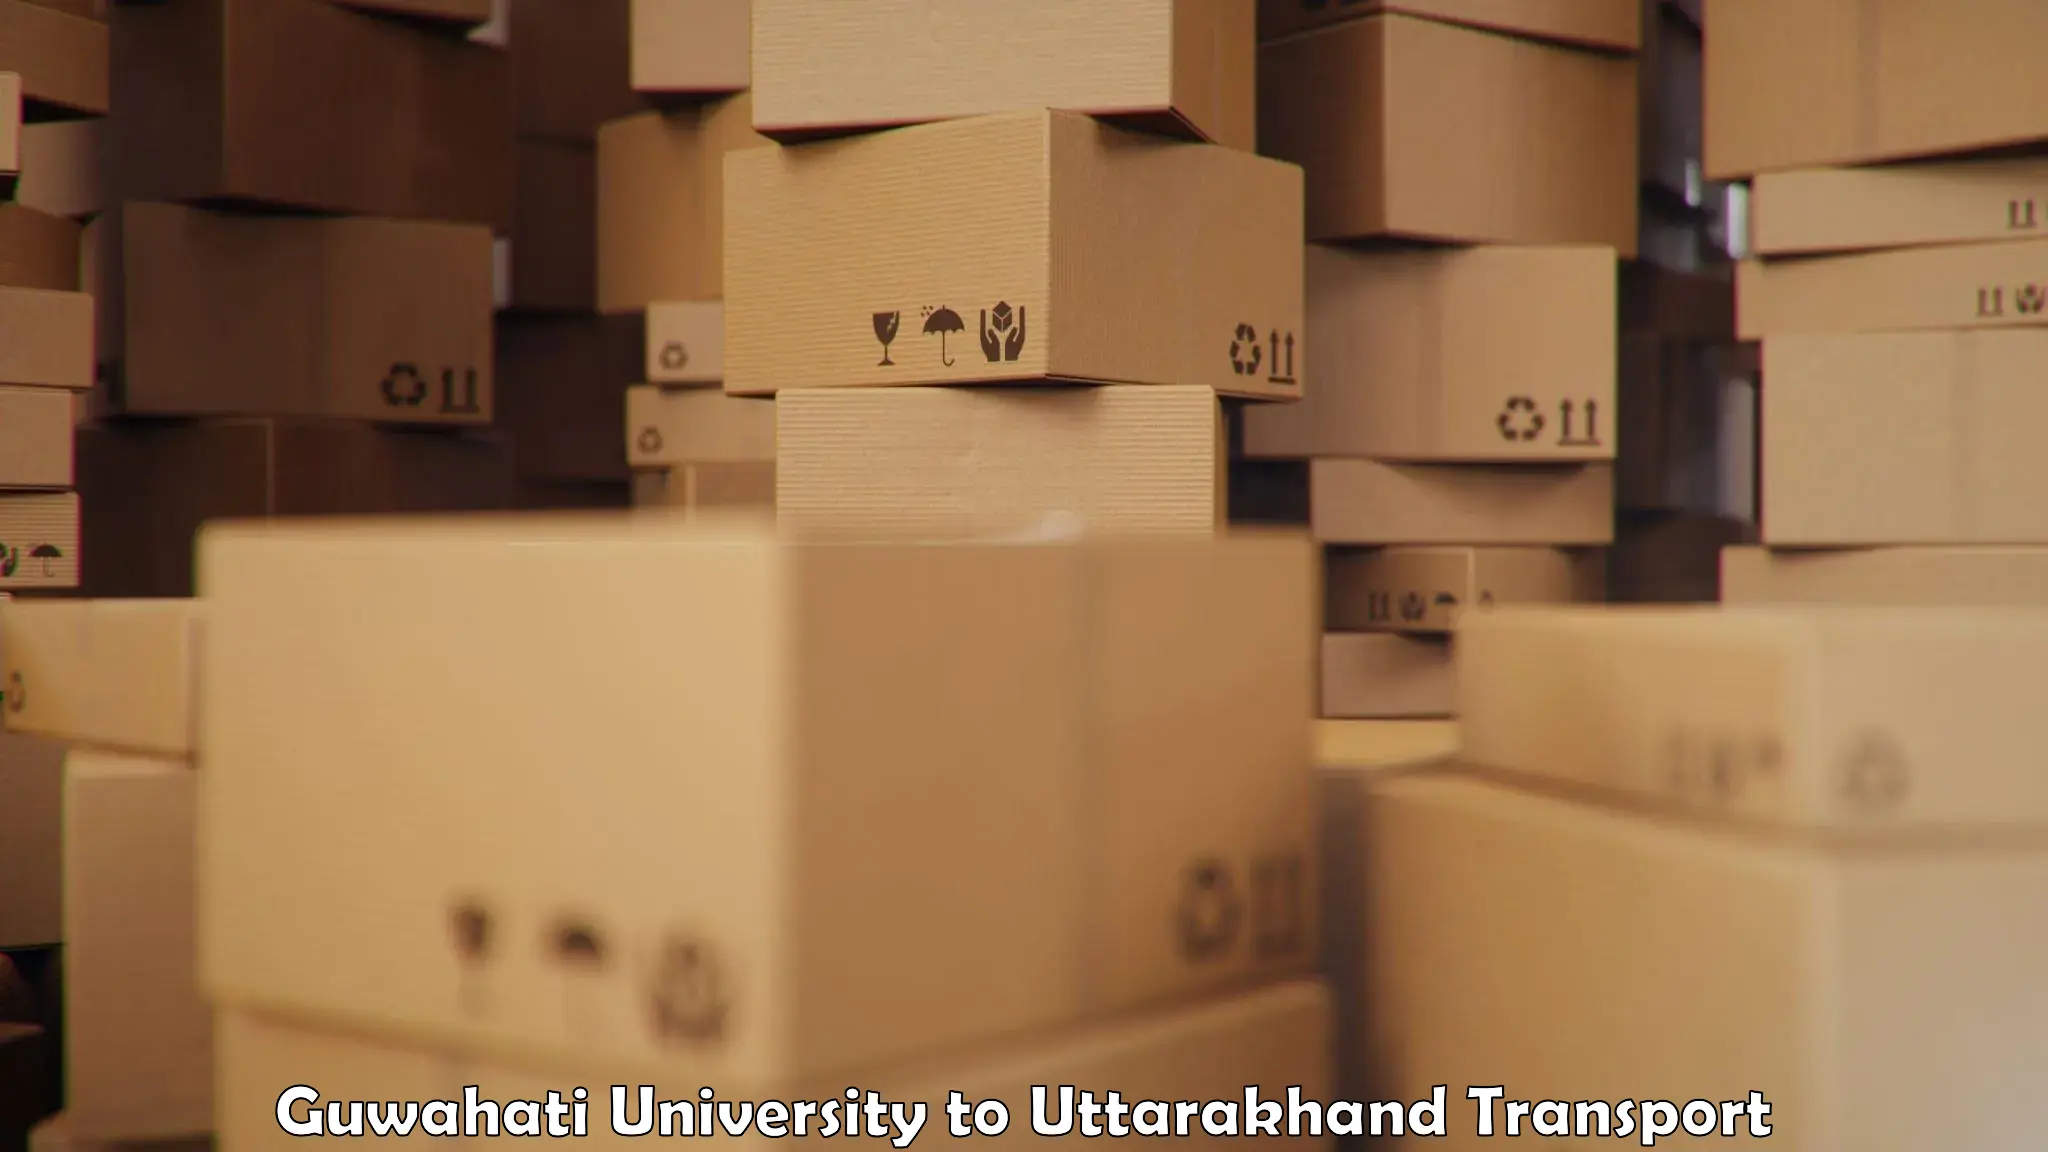 Vehicle parcel service Guwahati University to Someshwar